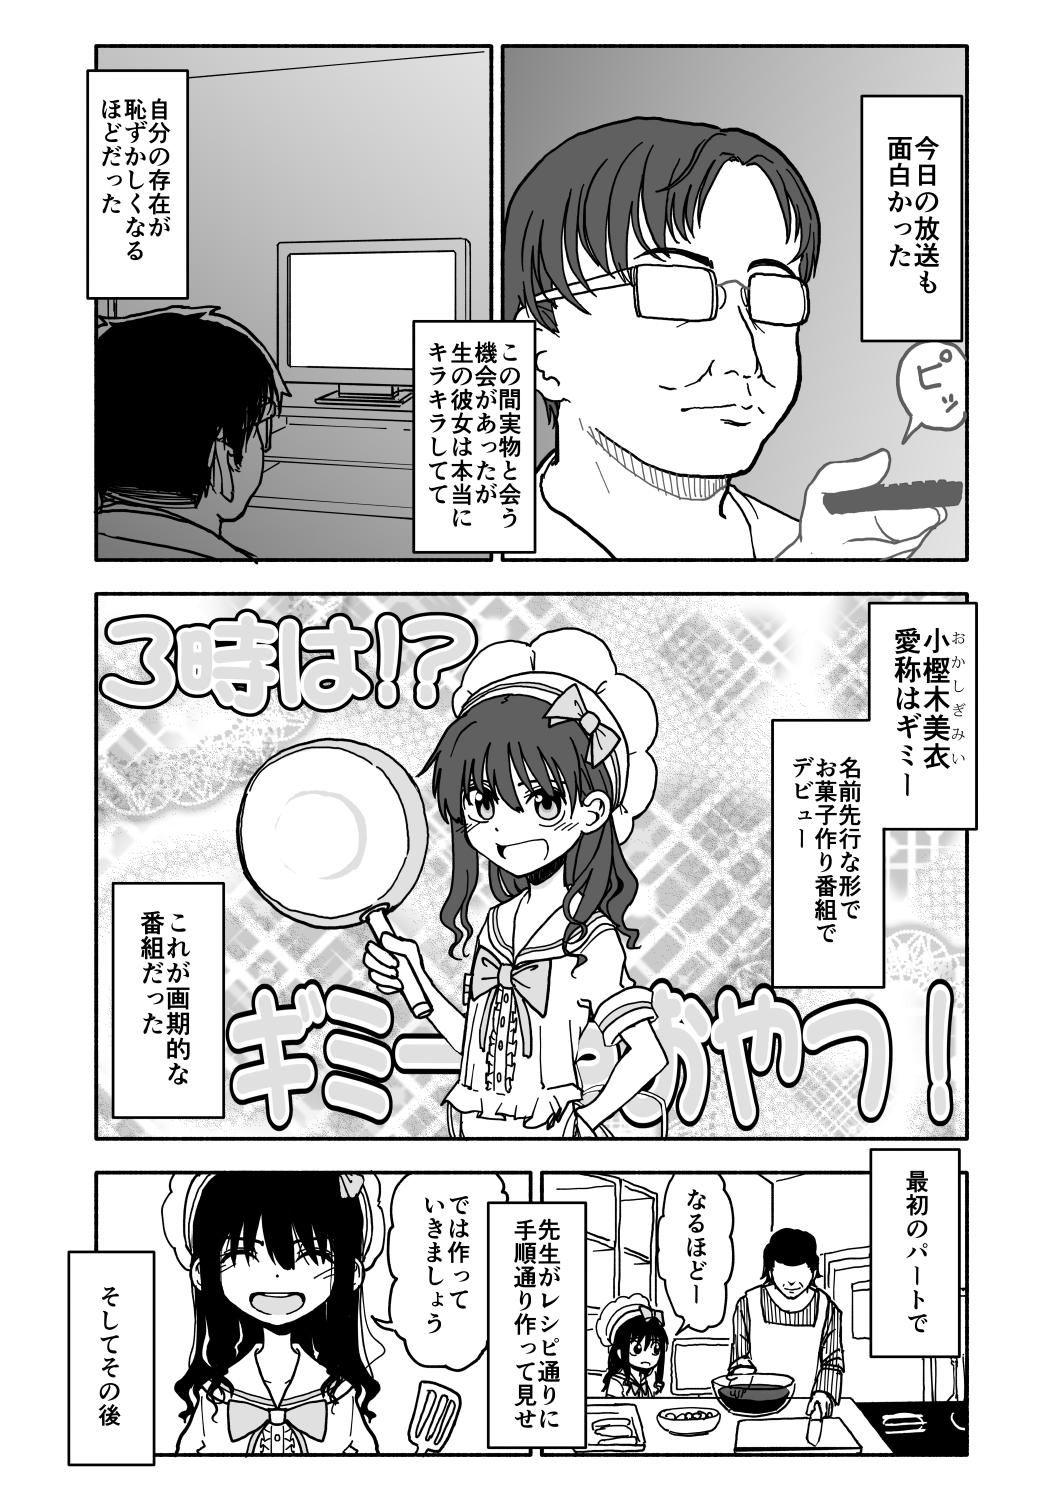 Whatsapp Okasi Tsukuri Idol ☆ Gimi ! Kankin choukyo manga Novinho - Page 4